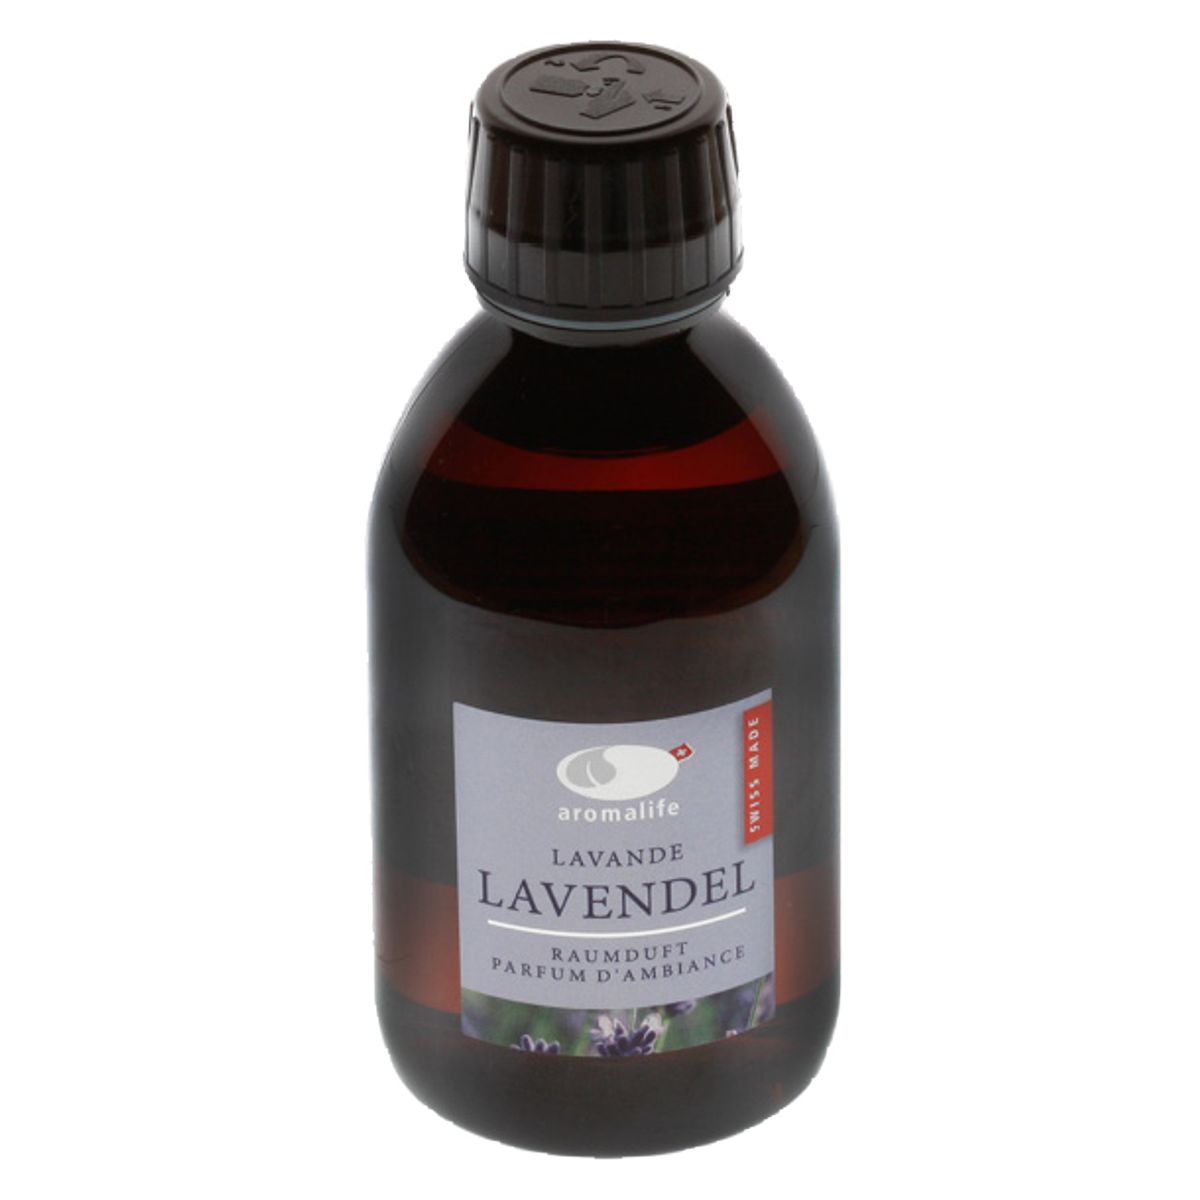 Aromalife Raumduft Lavendel Nachfüllung 250 ml